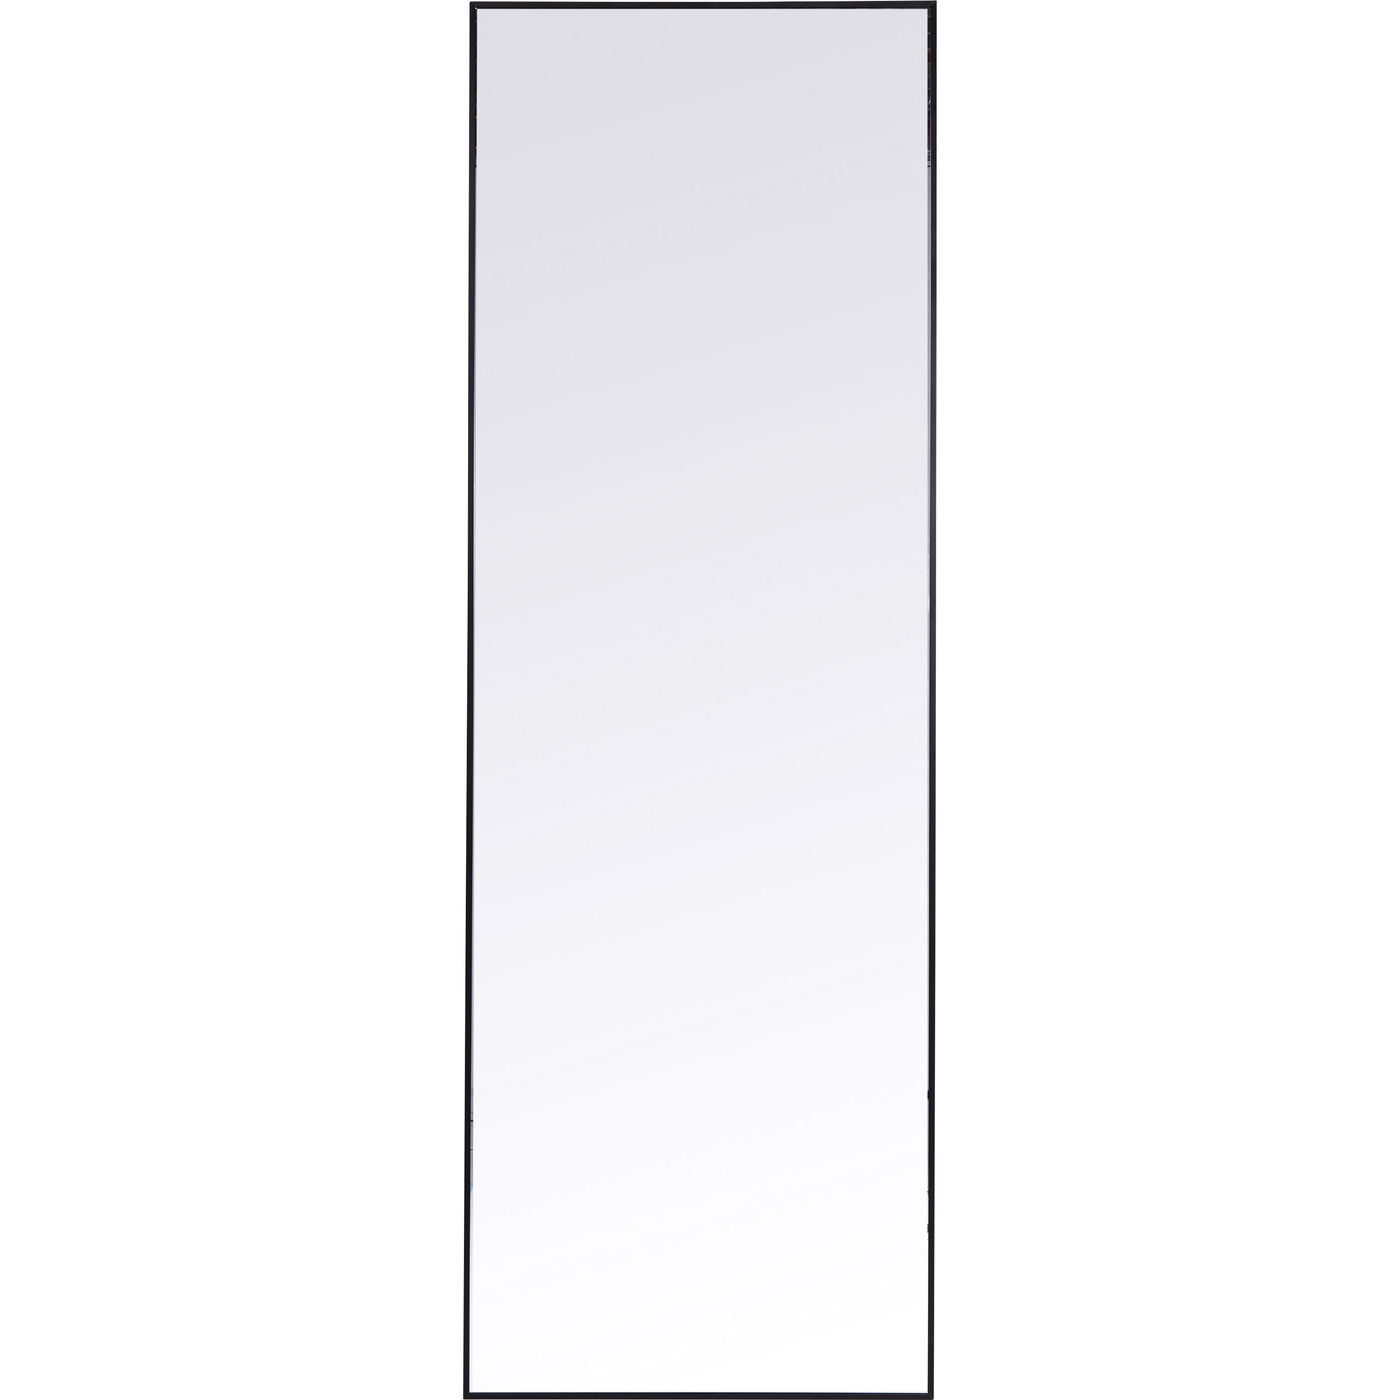 Зеркало - krc/0671. Узкое прямоугольное зеркало в алюминиевой черной .